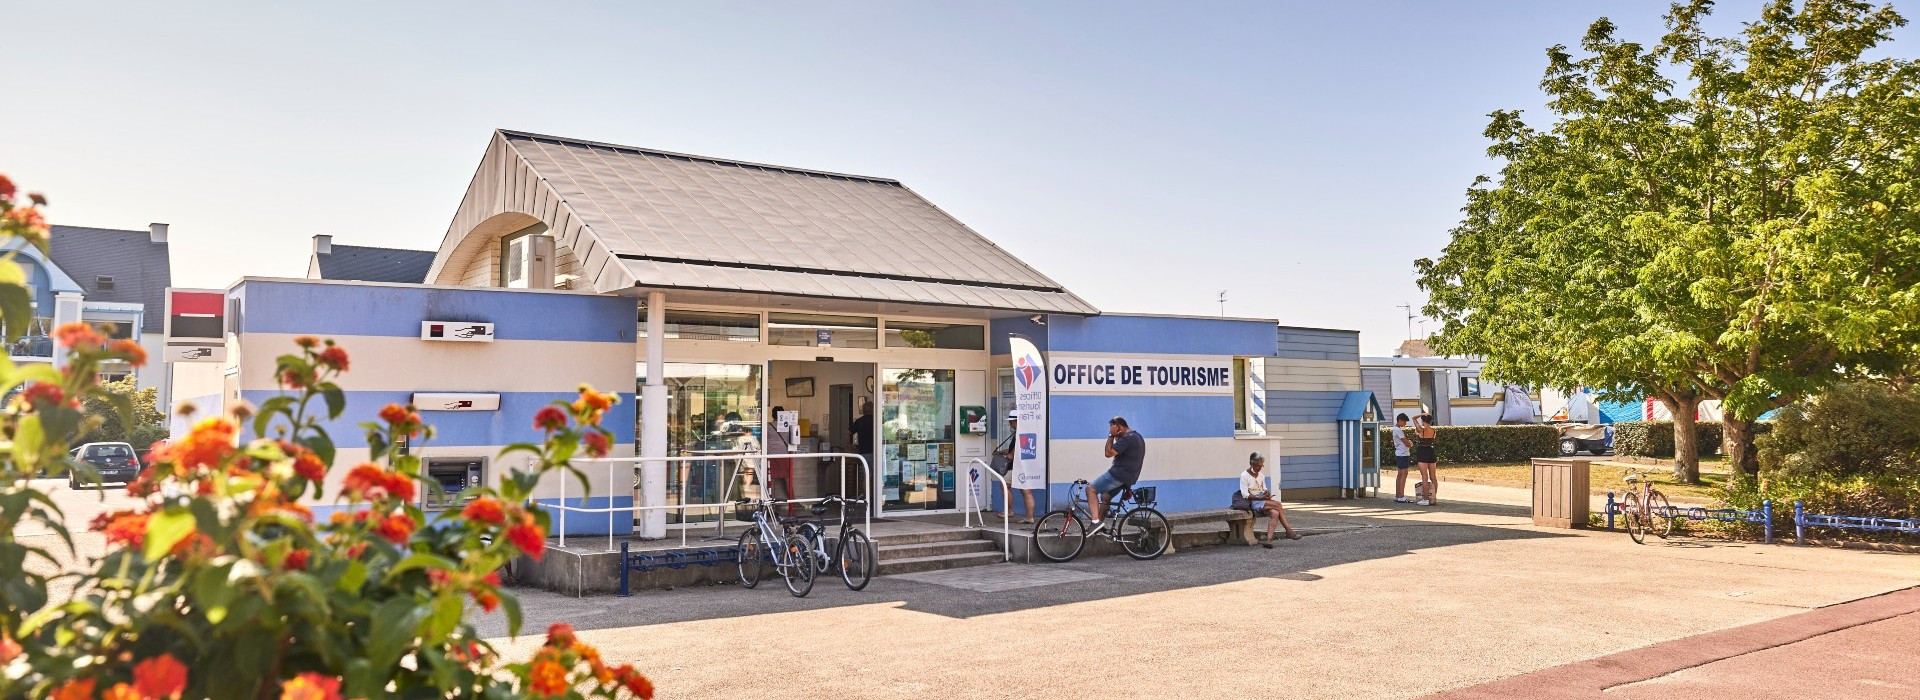 Votre Office de Tourisme - La Baule Presqu'île de Guérande